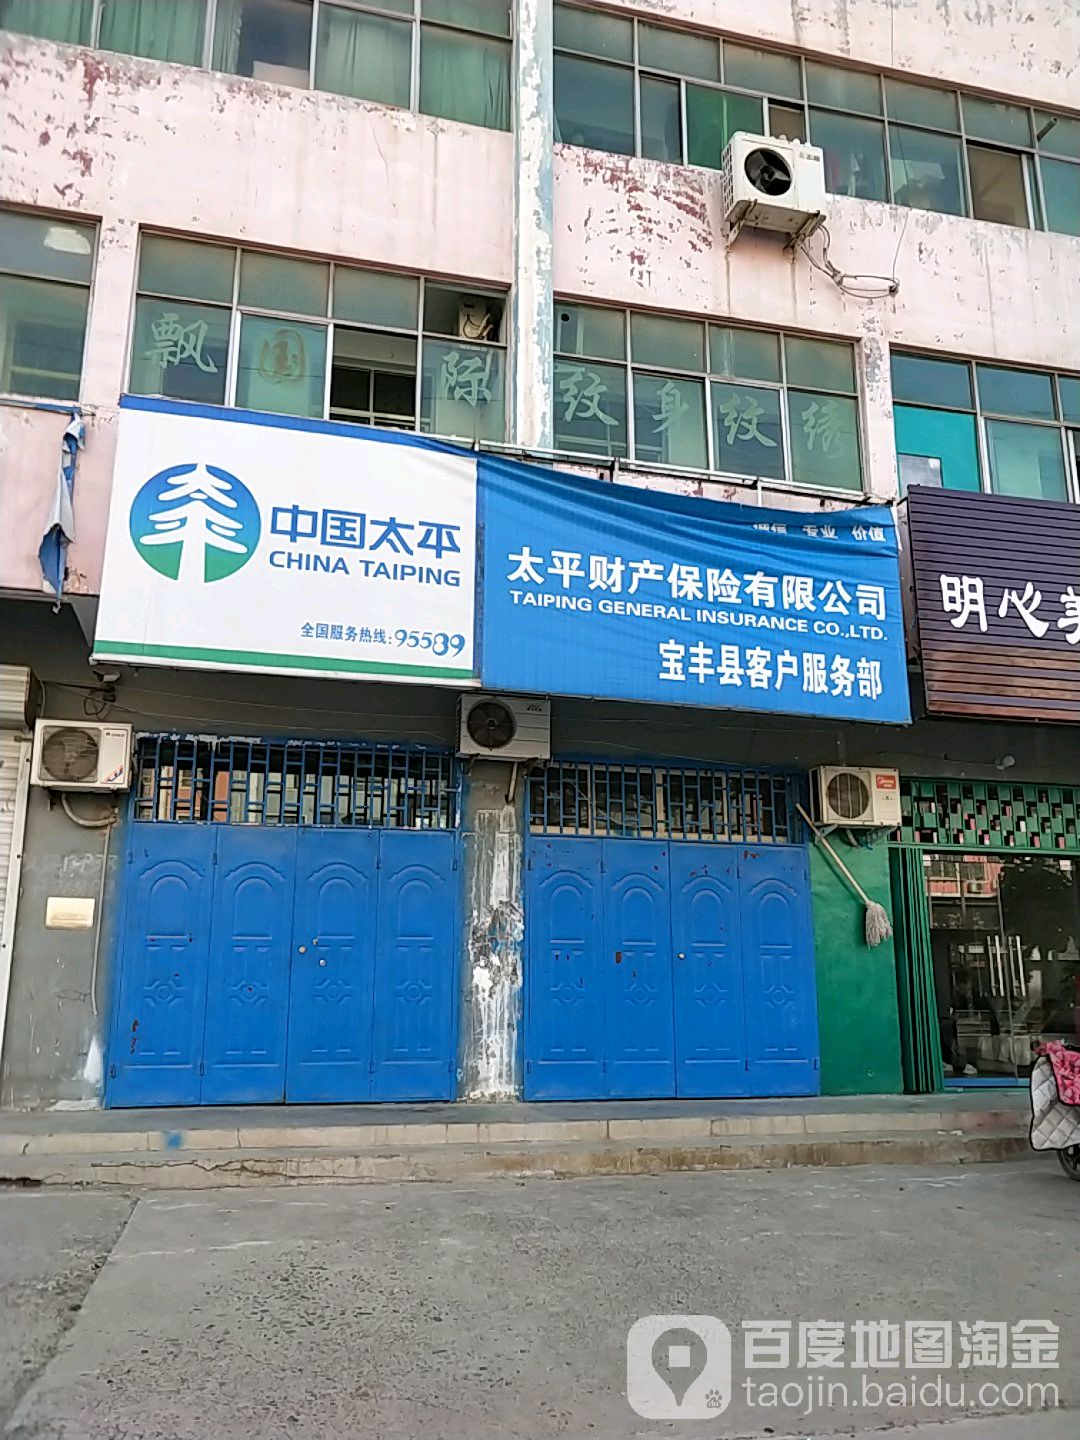 中国太平财产保险有限公司(宝丰县客户服务部)